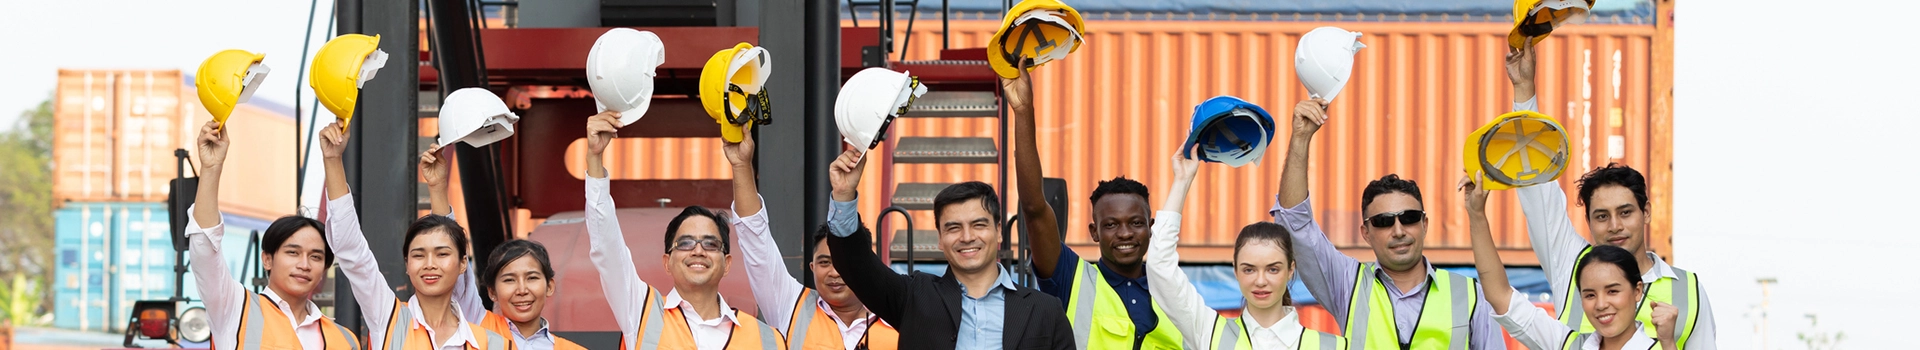 Pracownicy trzymający kaski nad głowami